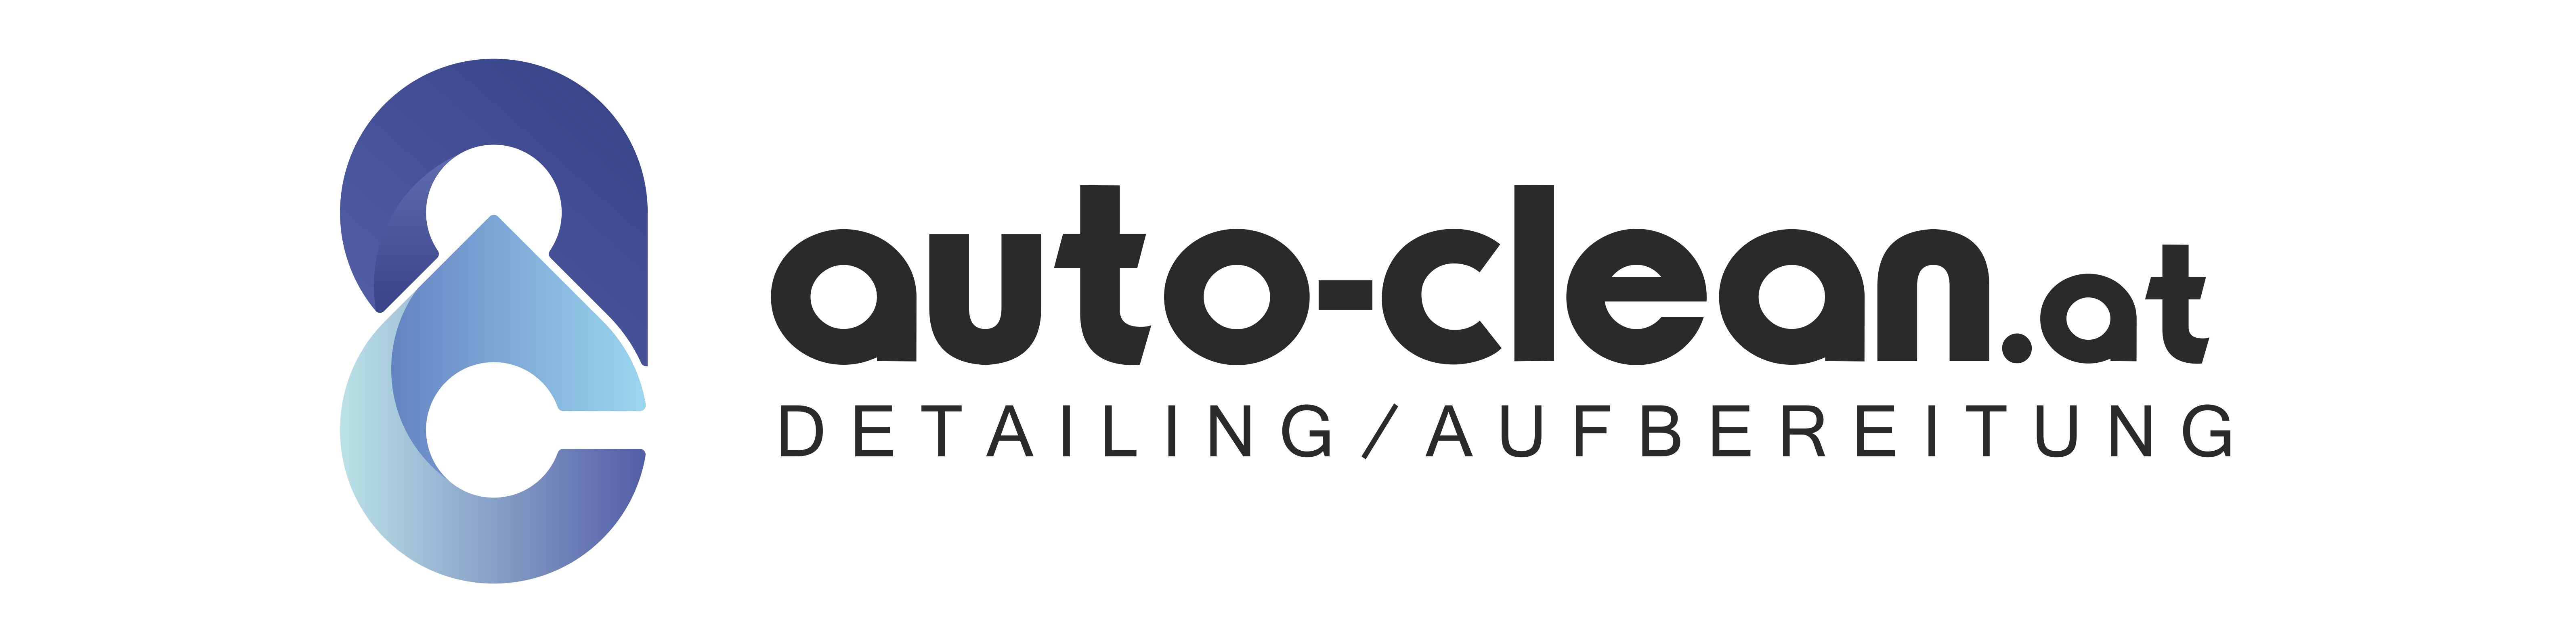 Auto Desinfektion Detailing Autoreinigung – AUTO CLEAN ECO STEAM – Autoreinigung Autodetailing Wien